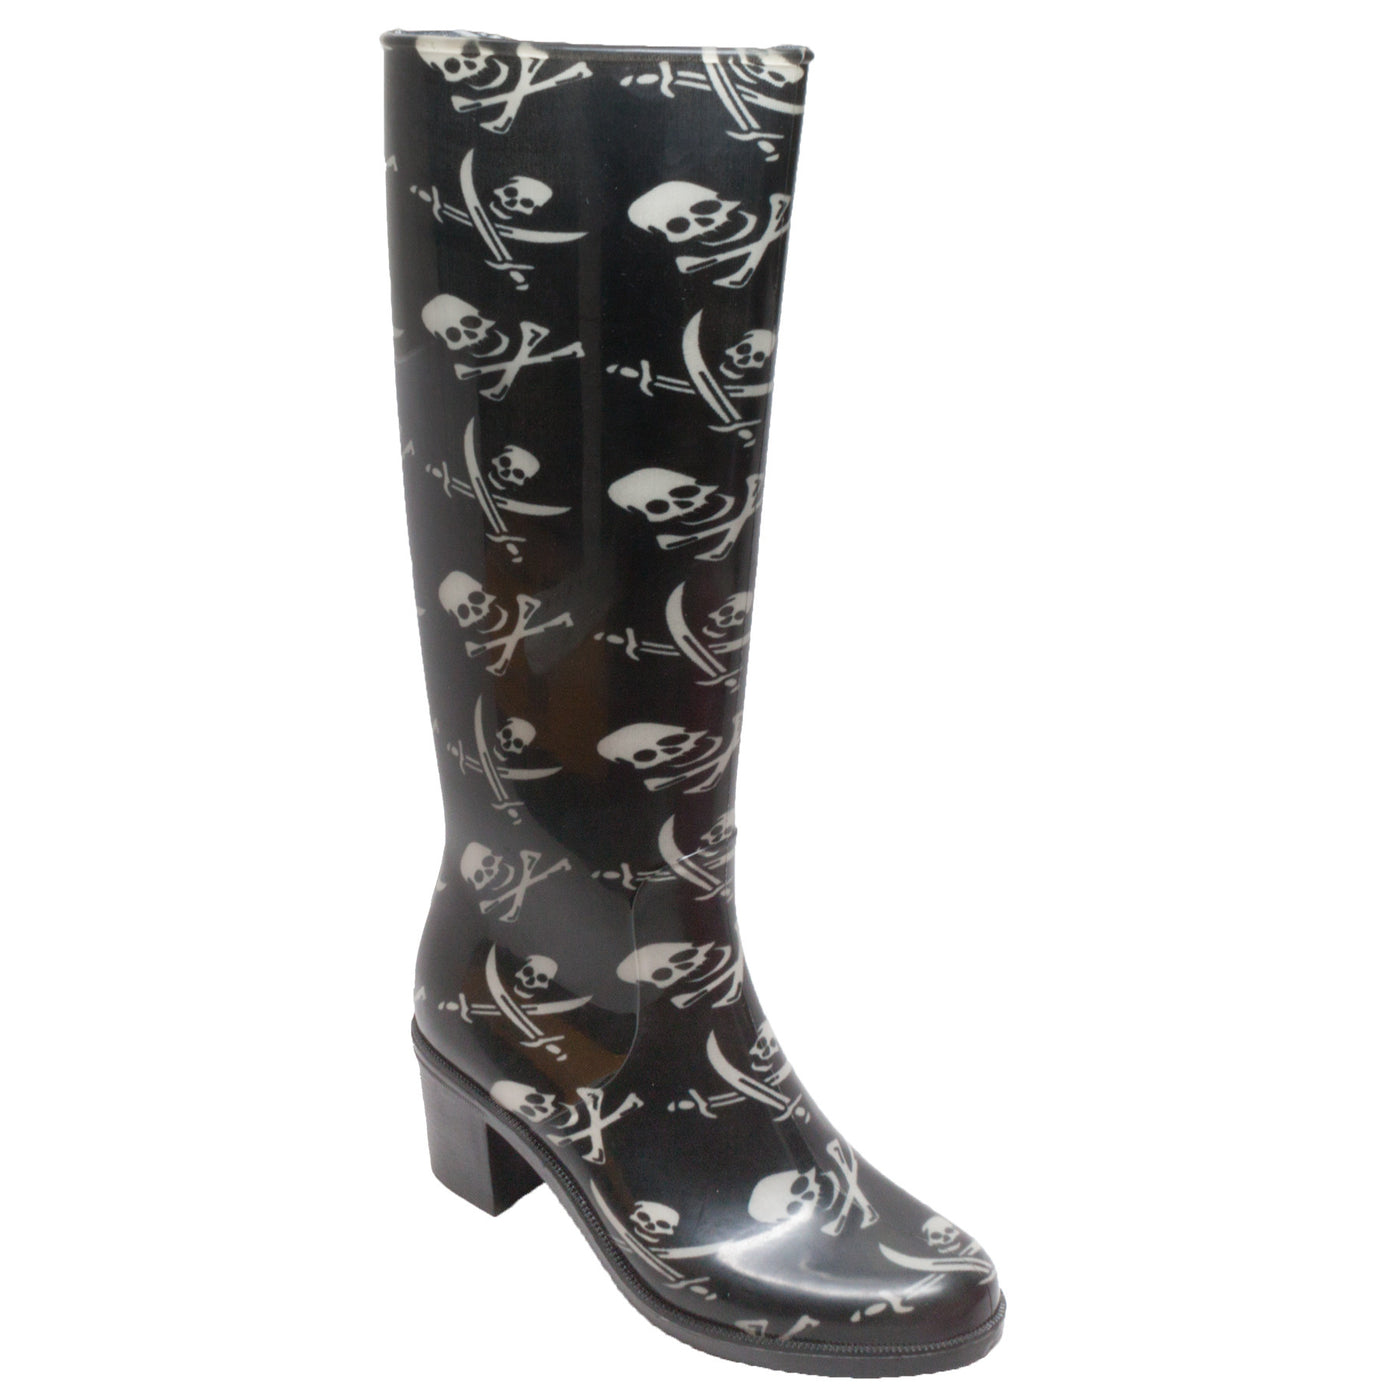 Women 16" Fashion Rain Boot Black - 8475 - Shop Genuine Leather men & women's boots online | AdTecFootWear